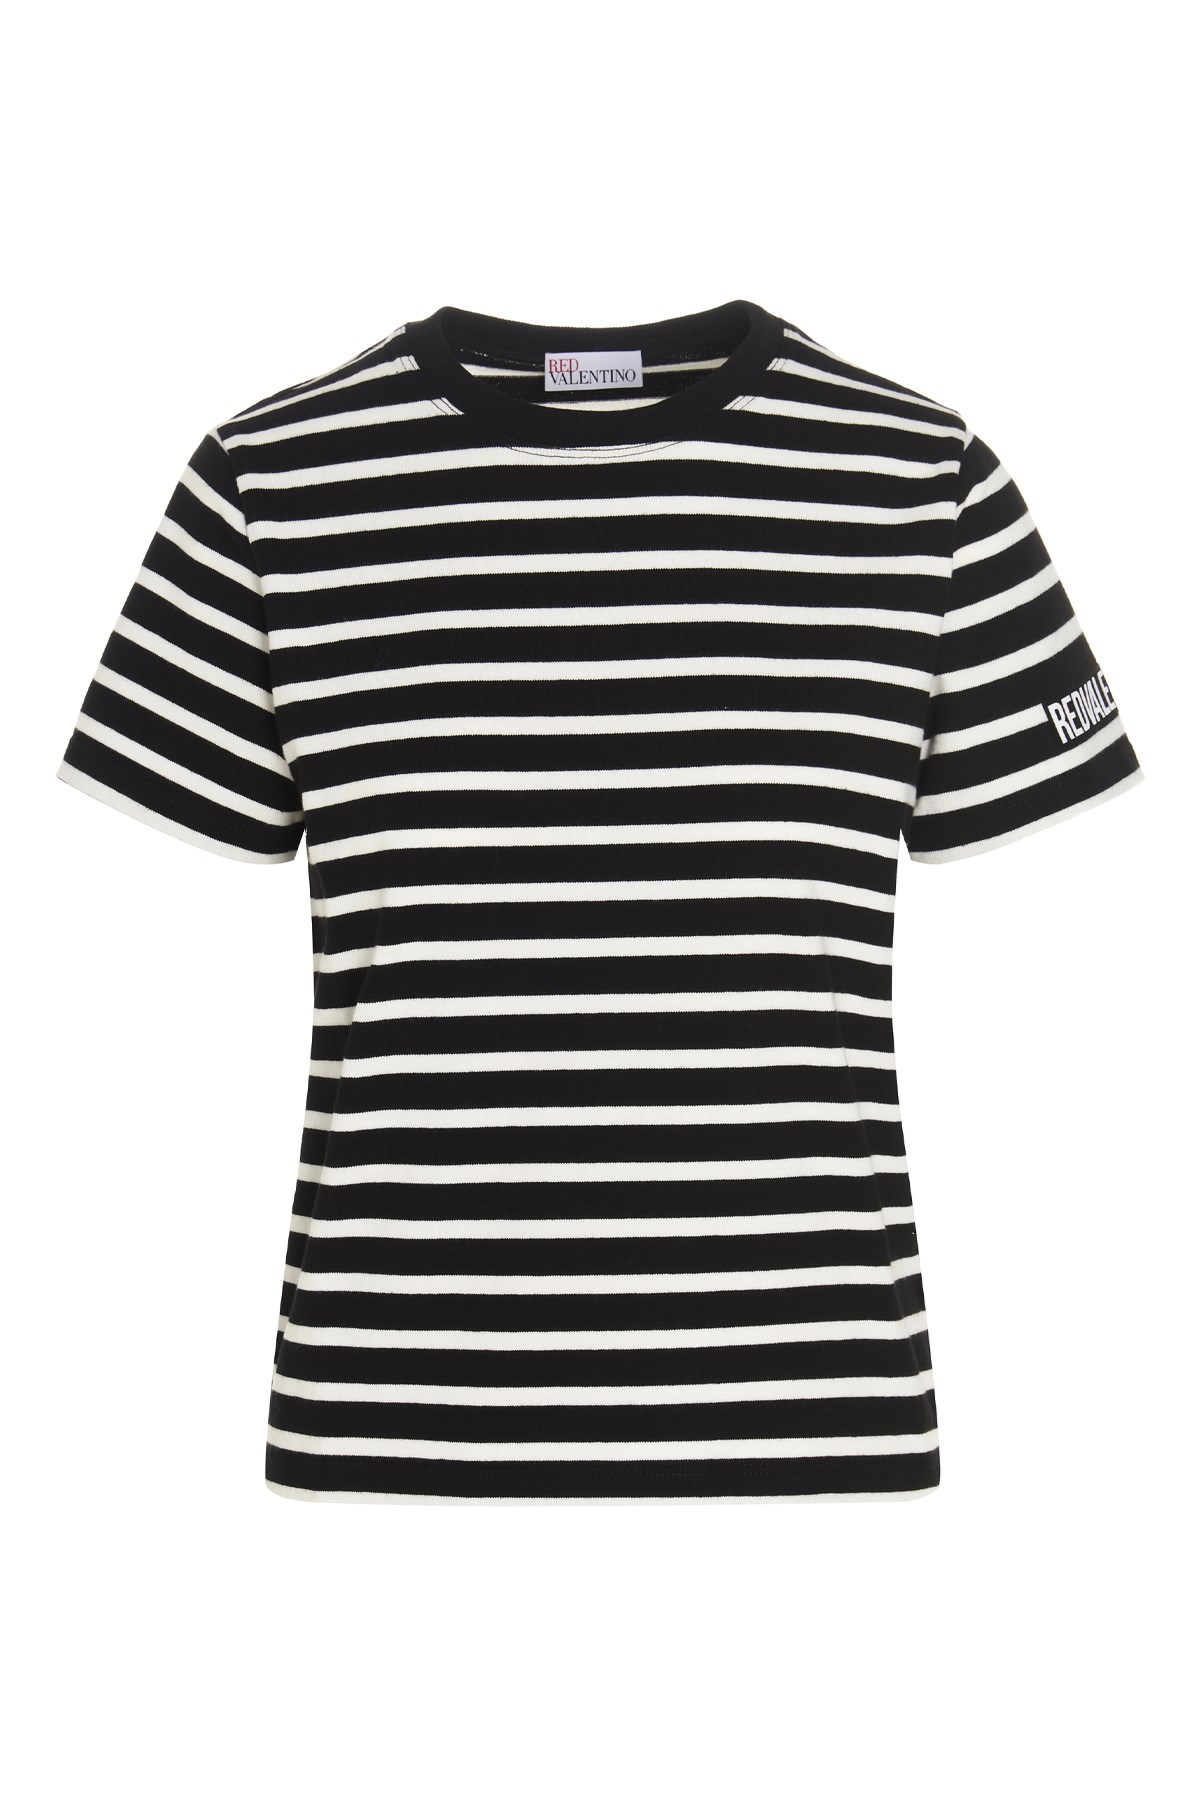 REDVALENTINO Stripes T-Shirt